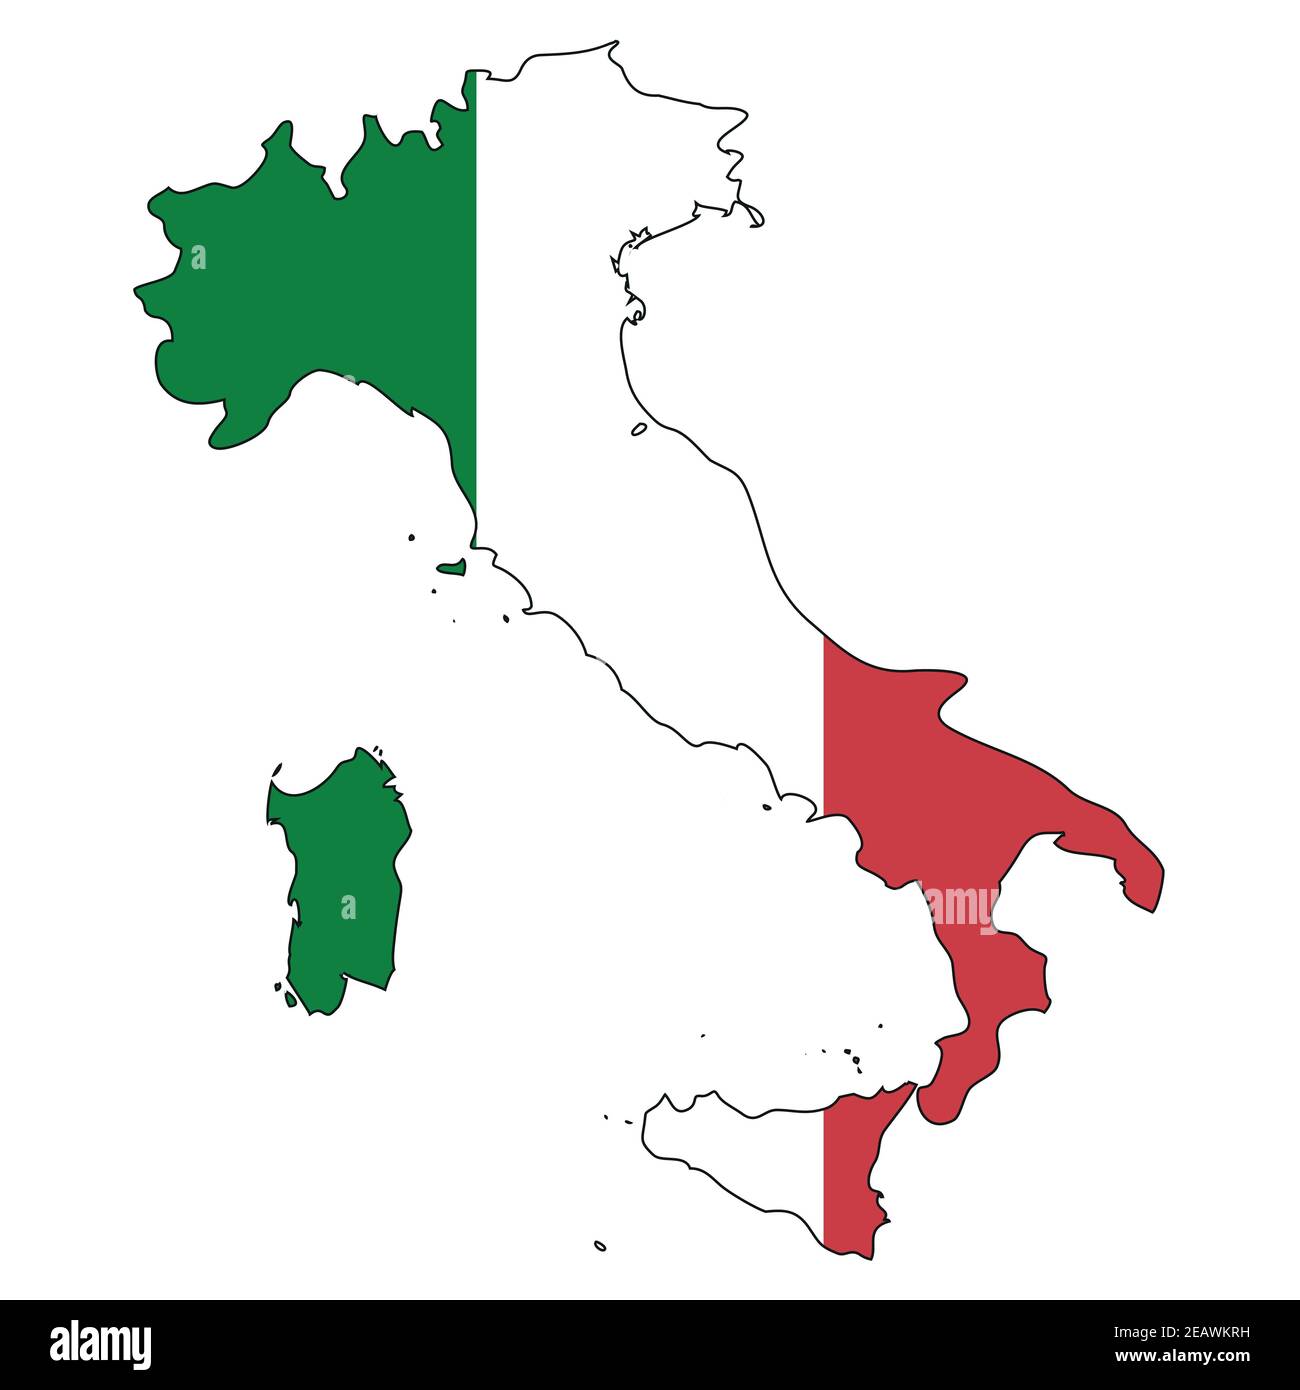 Carte de l'Italie avec drapeau - contour d'un état avec drapeau national, fond blanc, vecteur Illustration de Vecteur